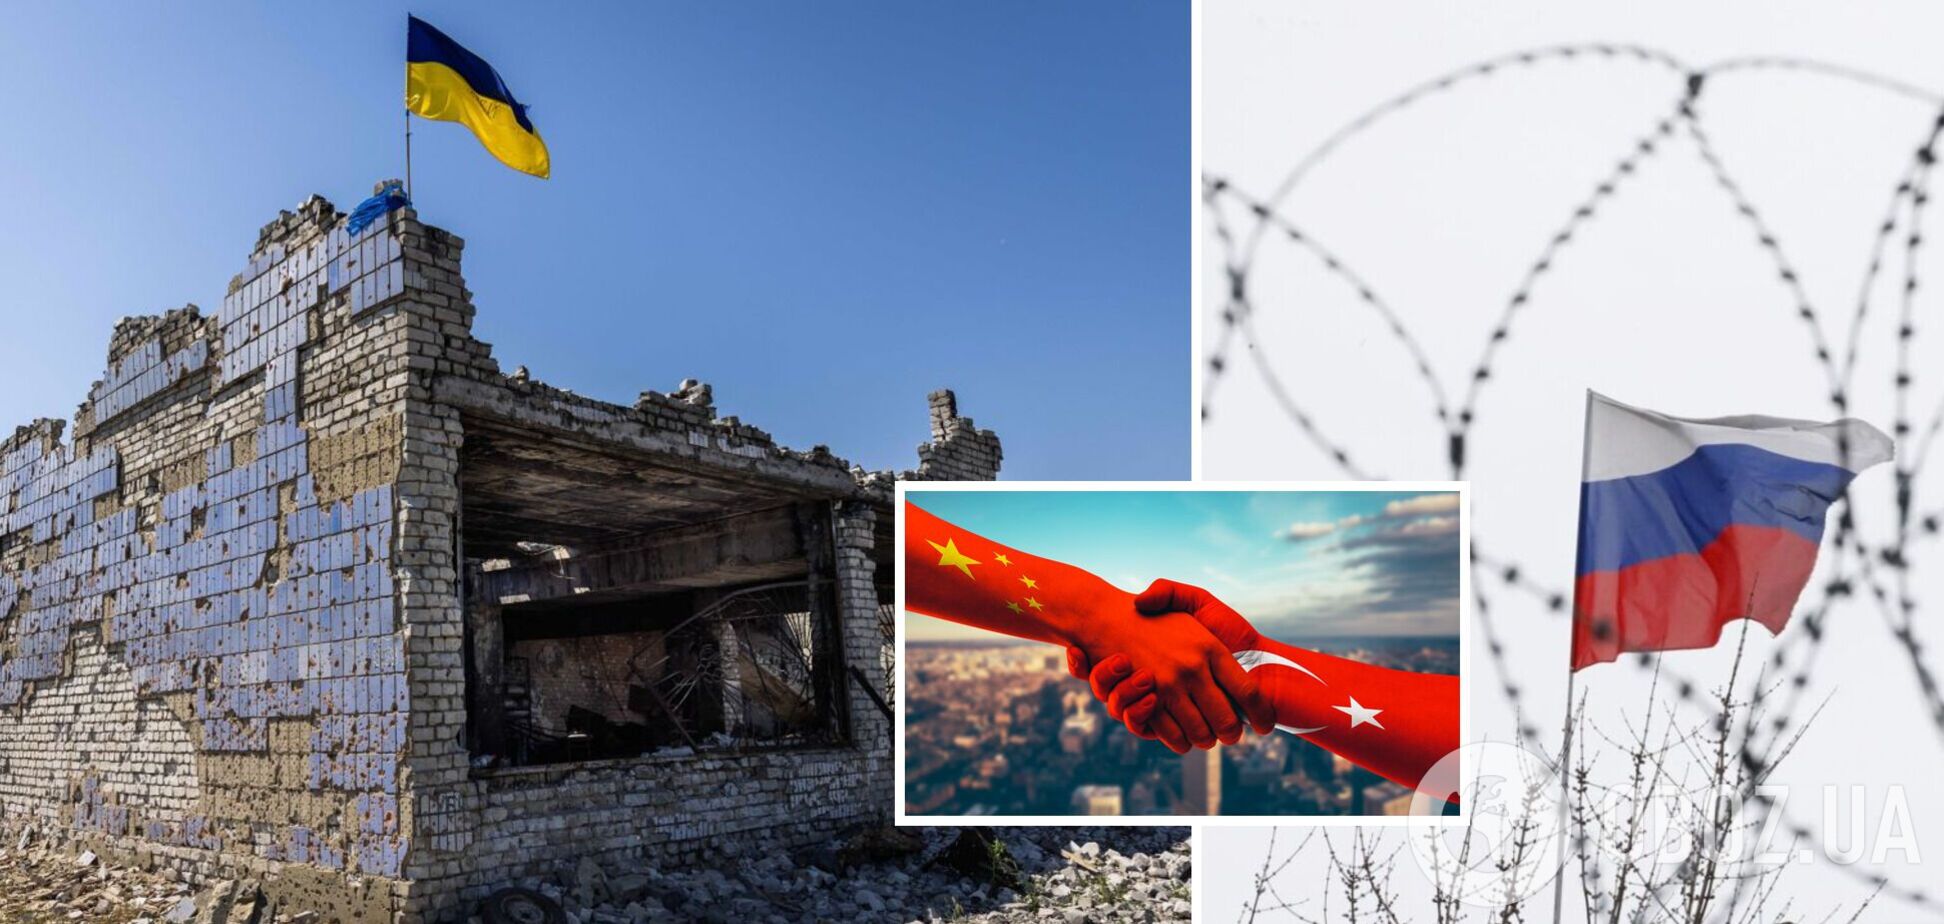 Турция и Китай разрабатывают переговорные платформы для урегулирования ситуации в Украине: ISW указал на риски